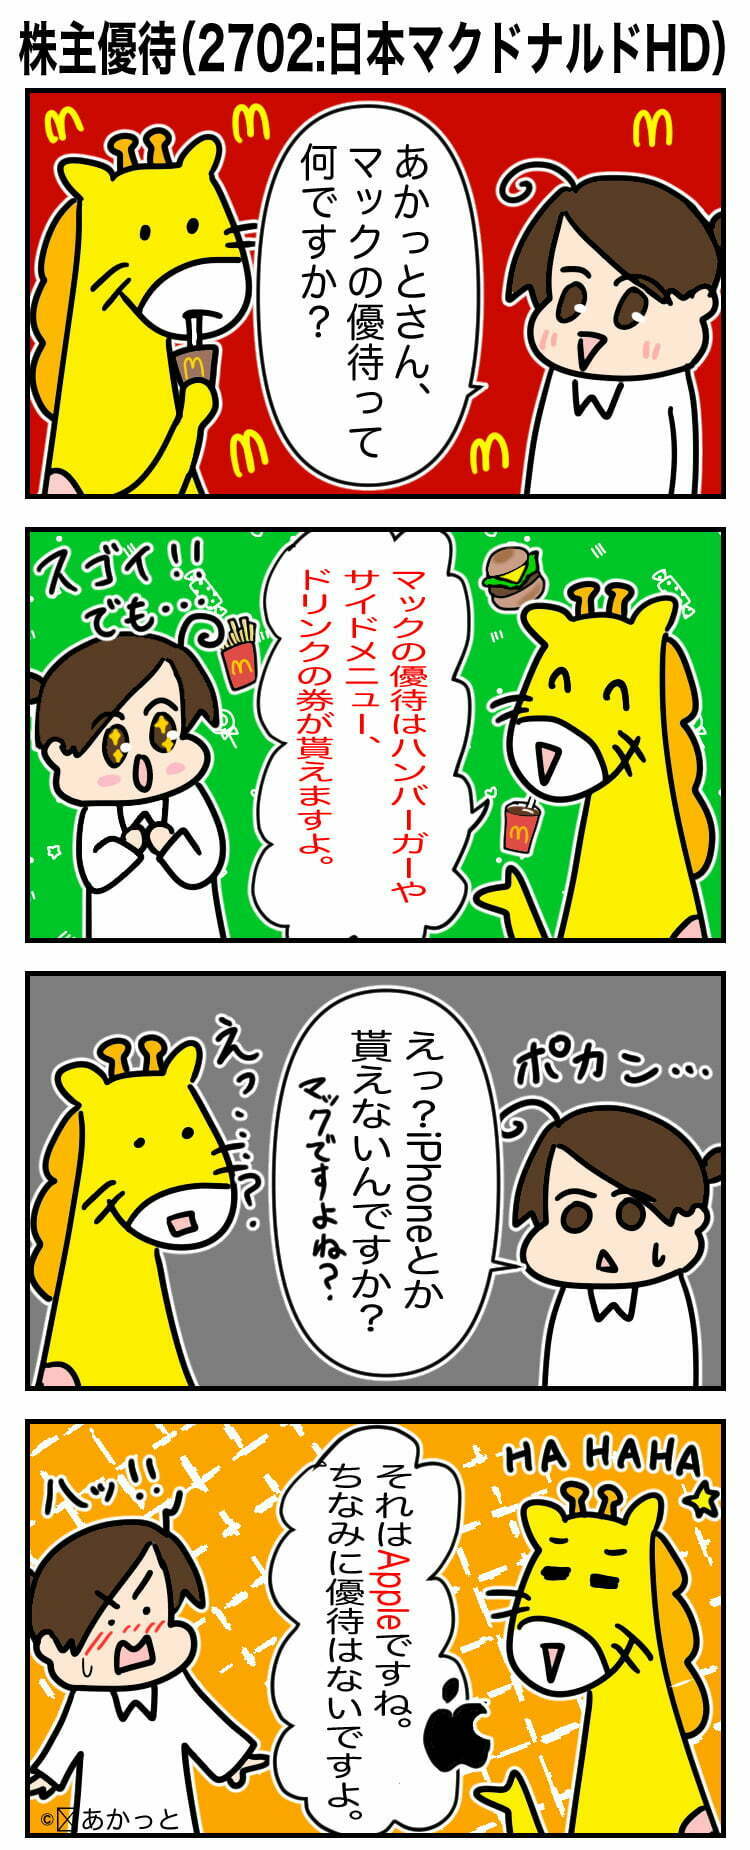 日本マクドナルドHD(2702)株主優待についての解説漫画